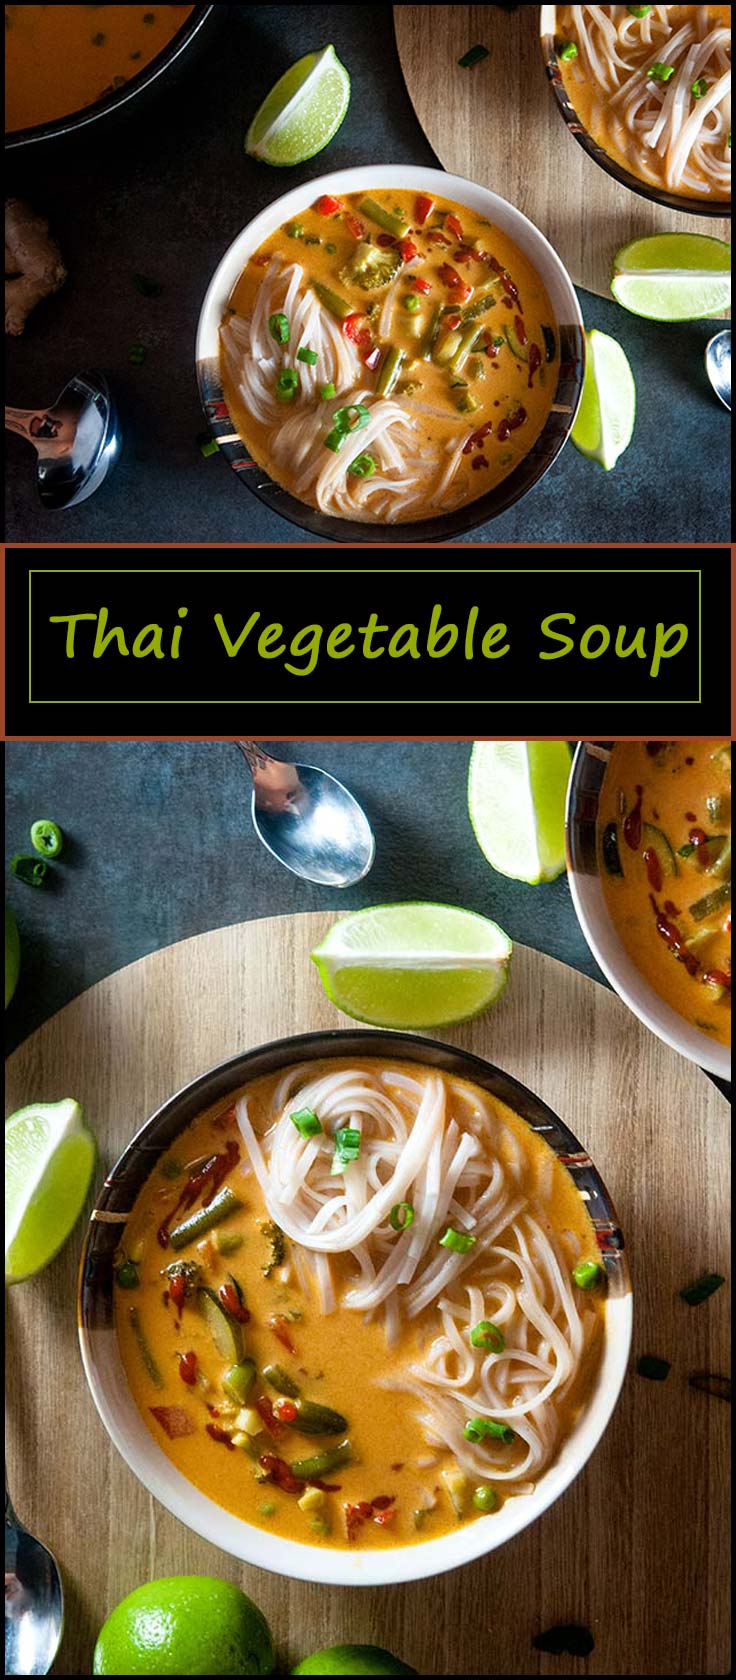 Easy vegetarian and vegan friendly spicy Thai vegetable soup. Gluten free. from www.seasonedsprinkles.com